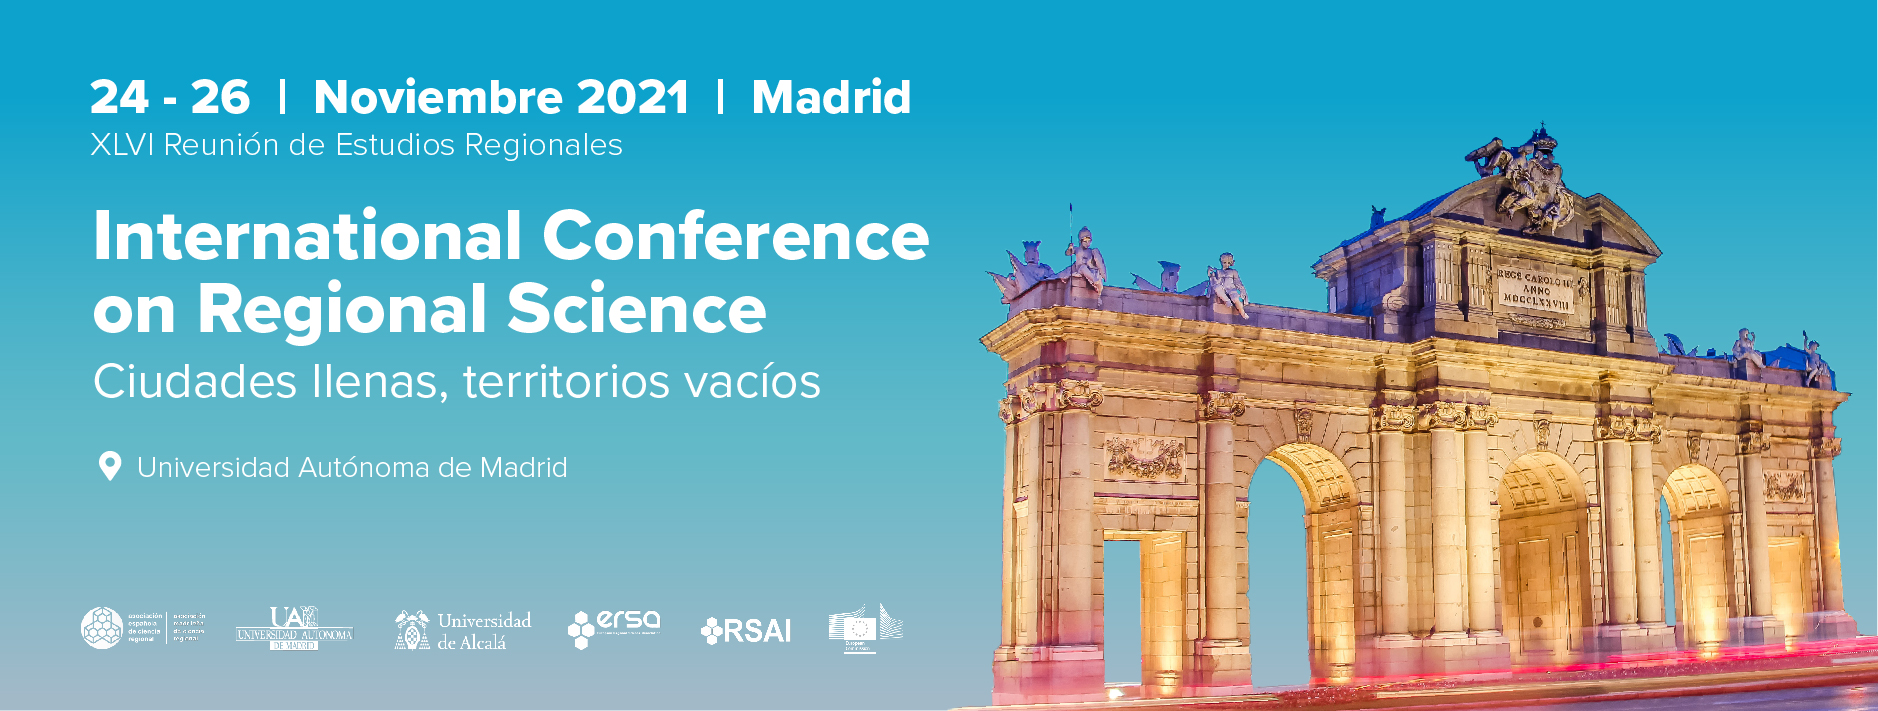 Actas de la XLVI Reunión de Estudios Regionales – Madrid, 24-26 de noviembre de 2021